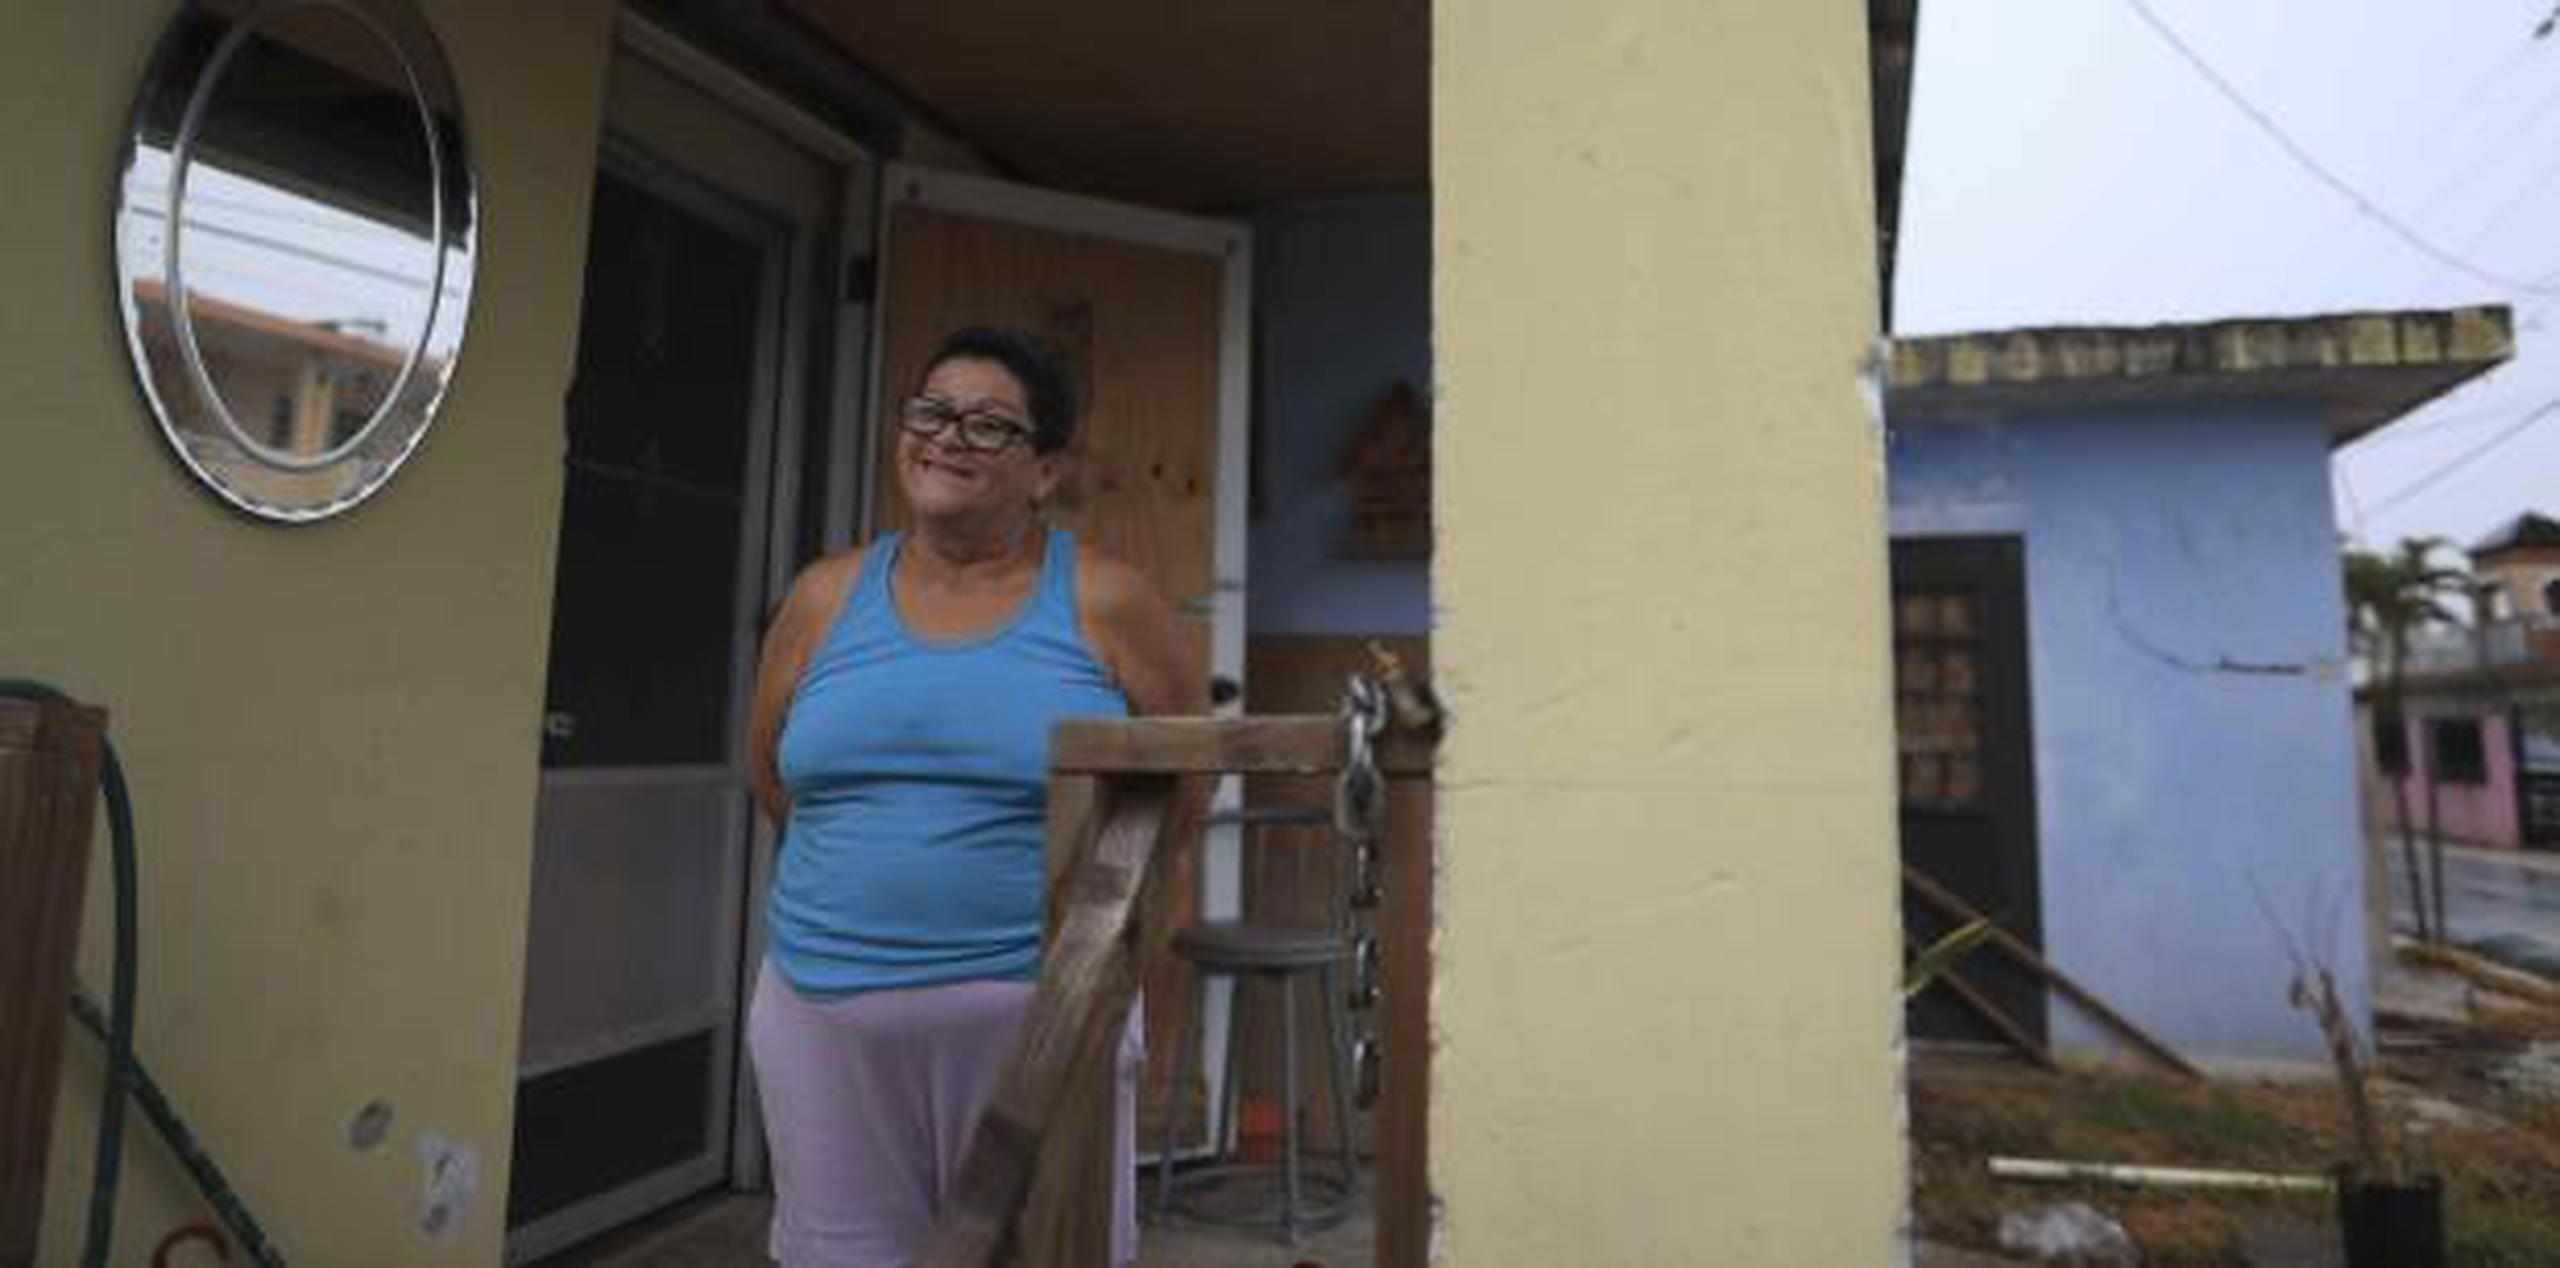 Carmen Montero vive e el sector Ingenio de Toa Baja, en una de las casas que todavía tienen los toldos azules. (teresa.canino@gfrmedia.com)